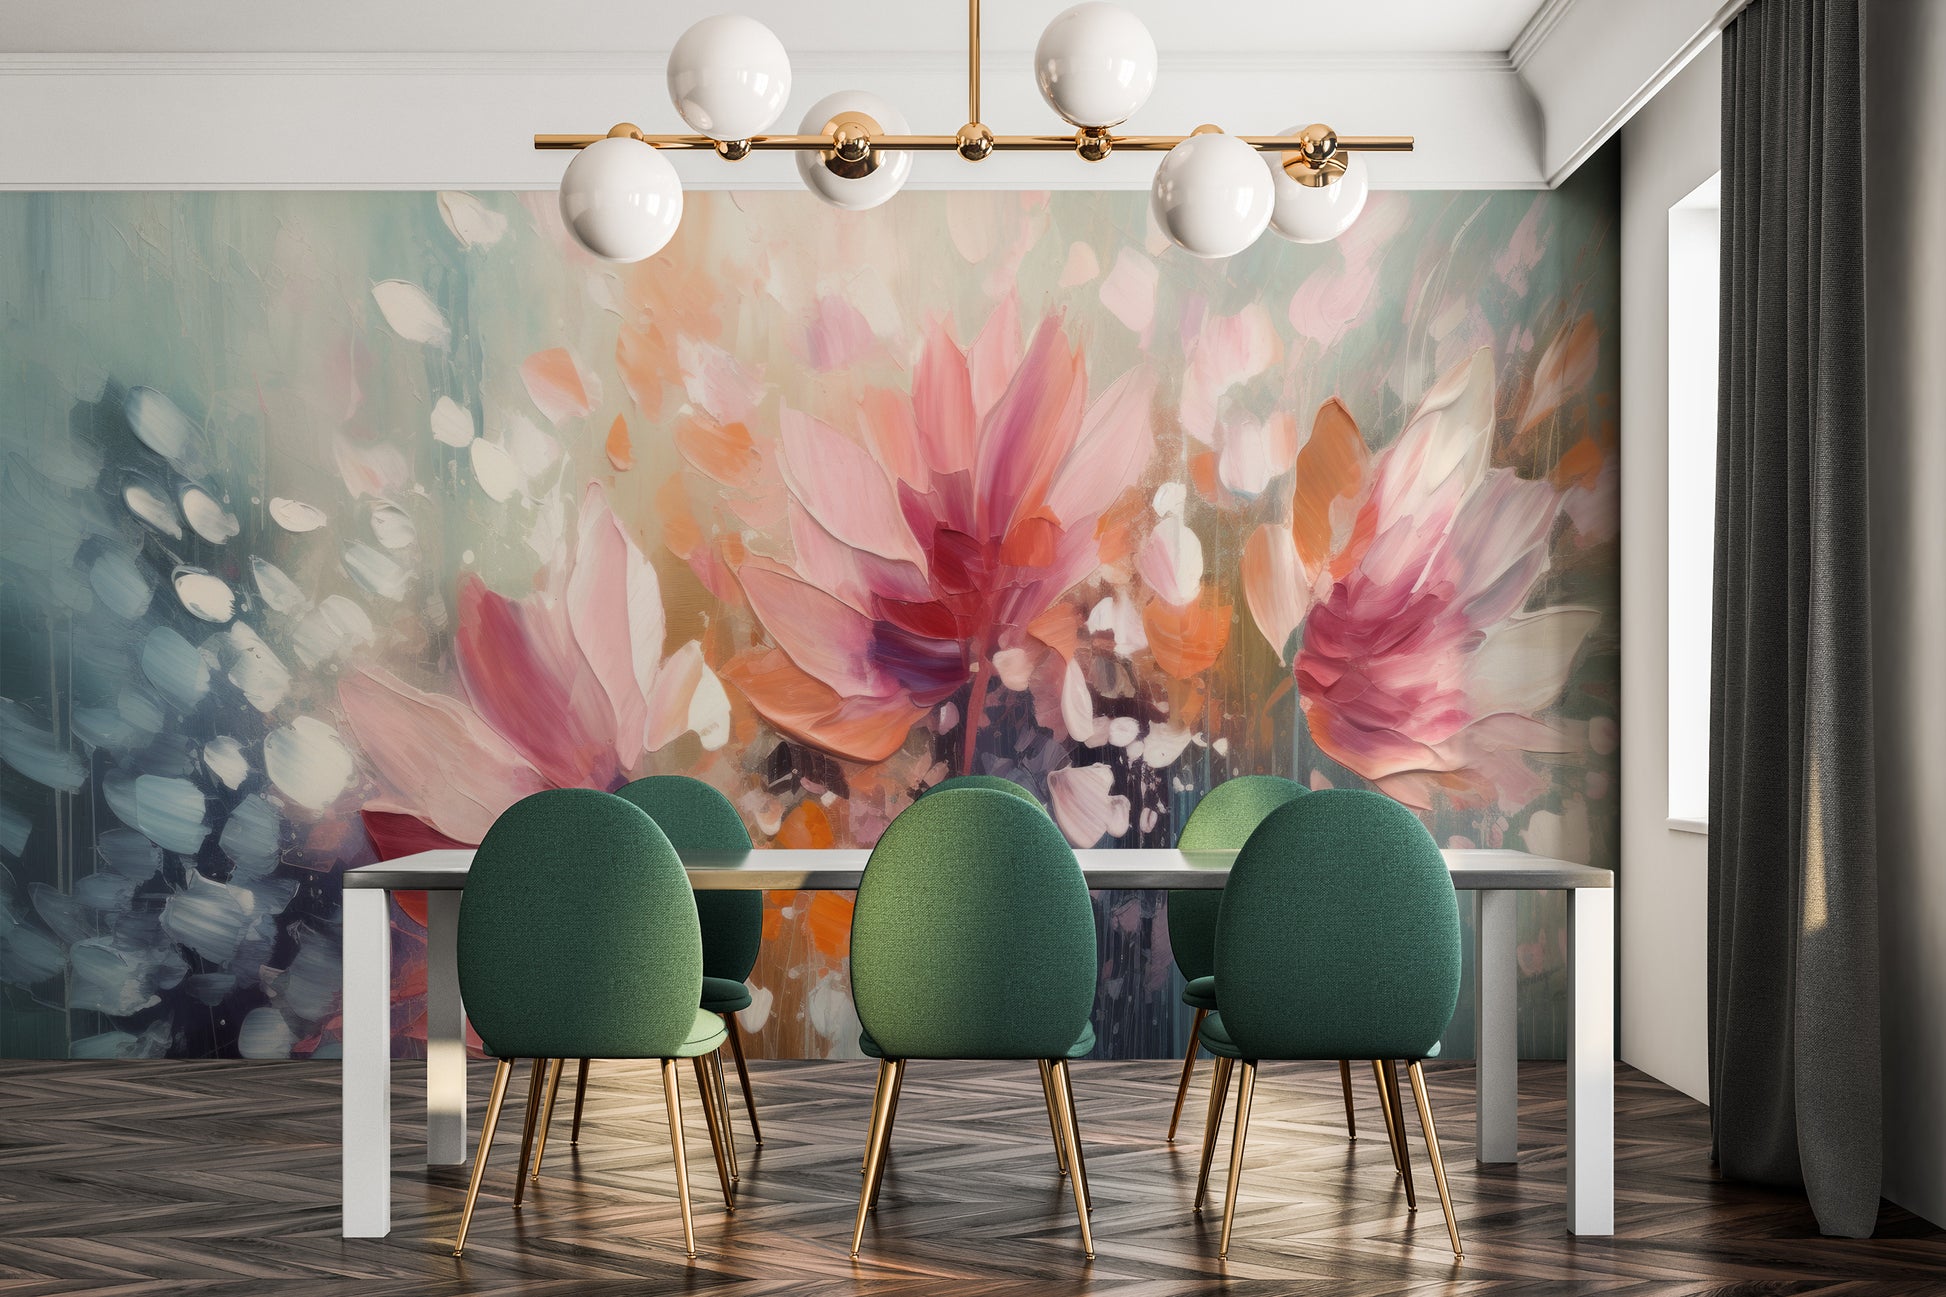 Fototapeta malowana o nazwie Dreamy Floral Abstraction pokazana w aranżacji wnętrza.